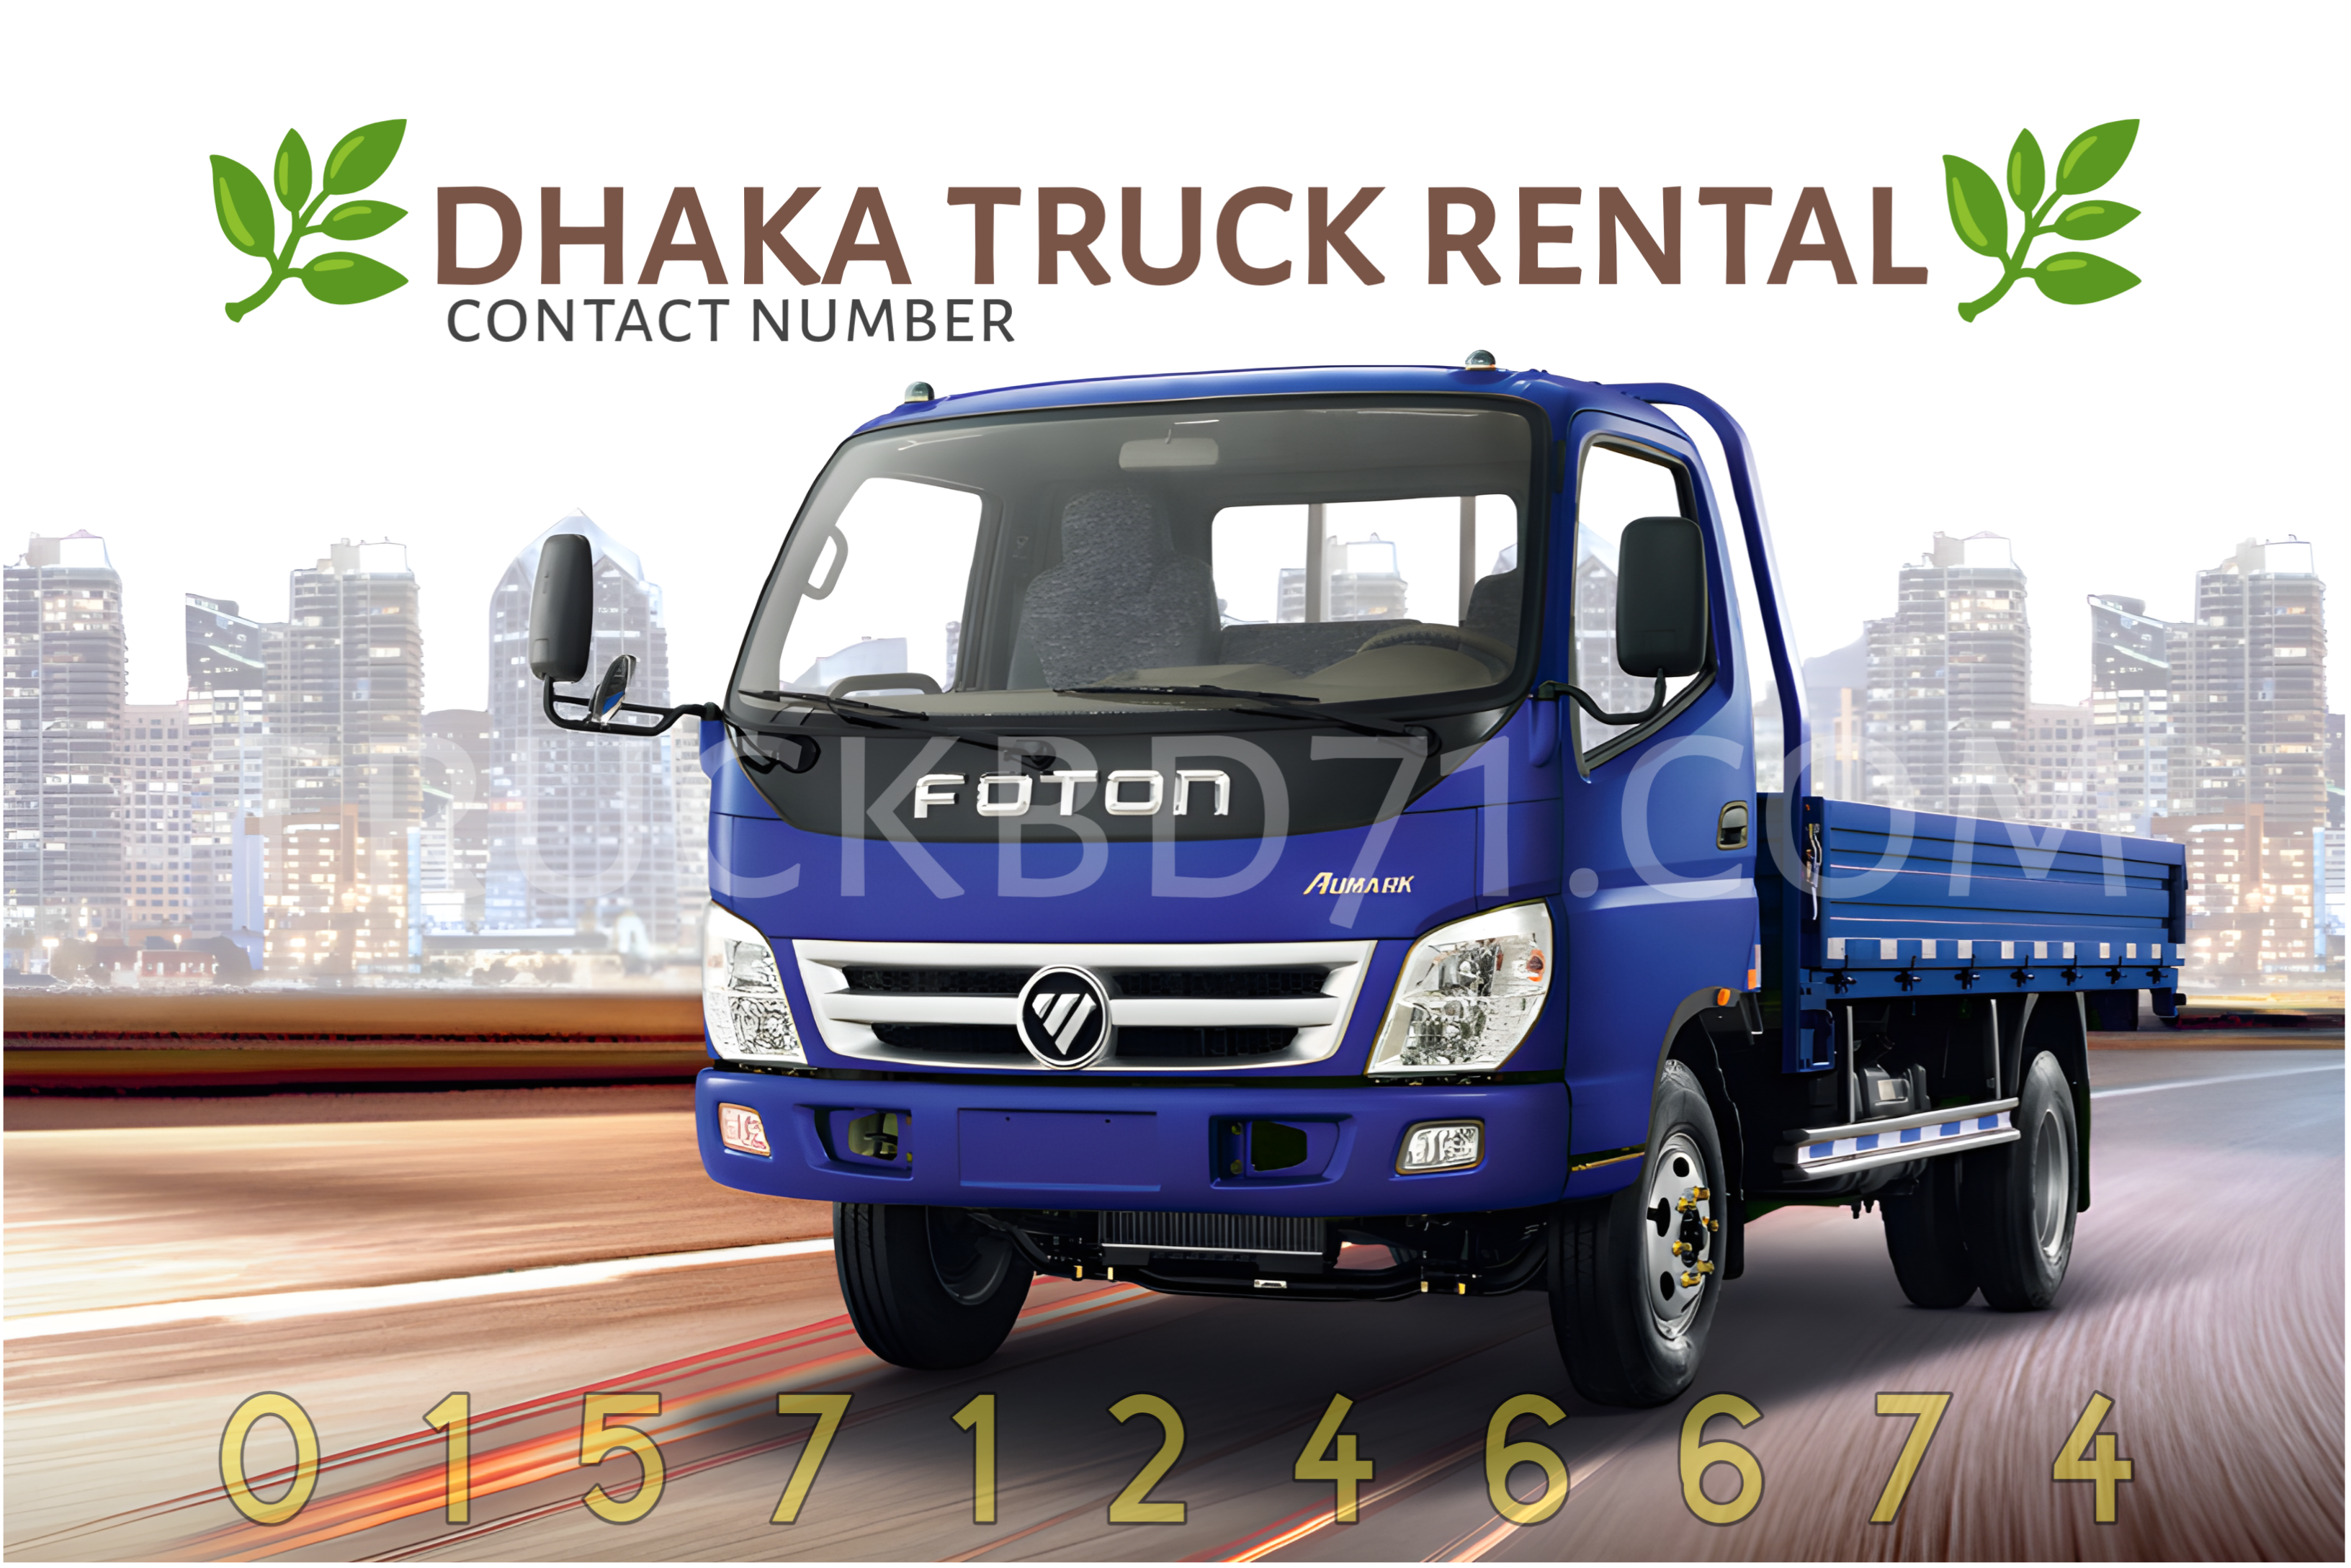 dhaka truck rental contact number truck lagbe truck rental dhaka